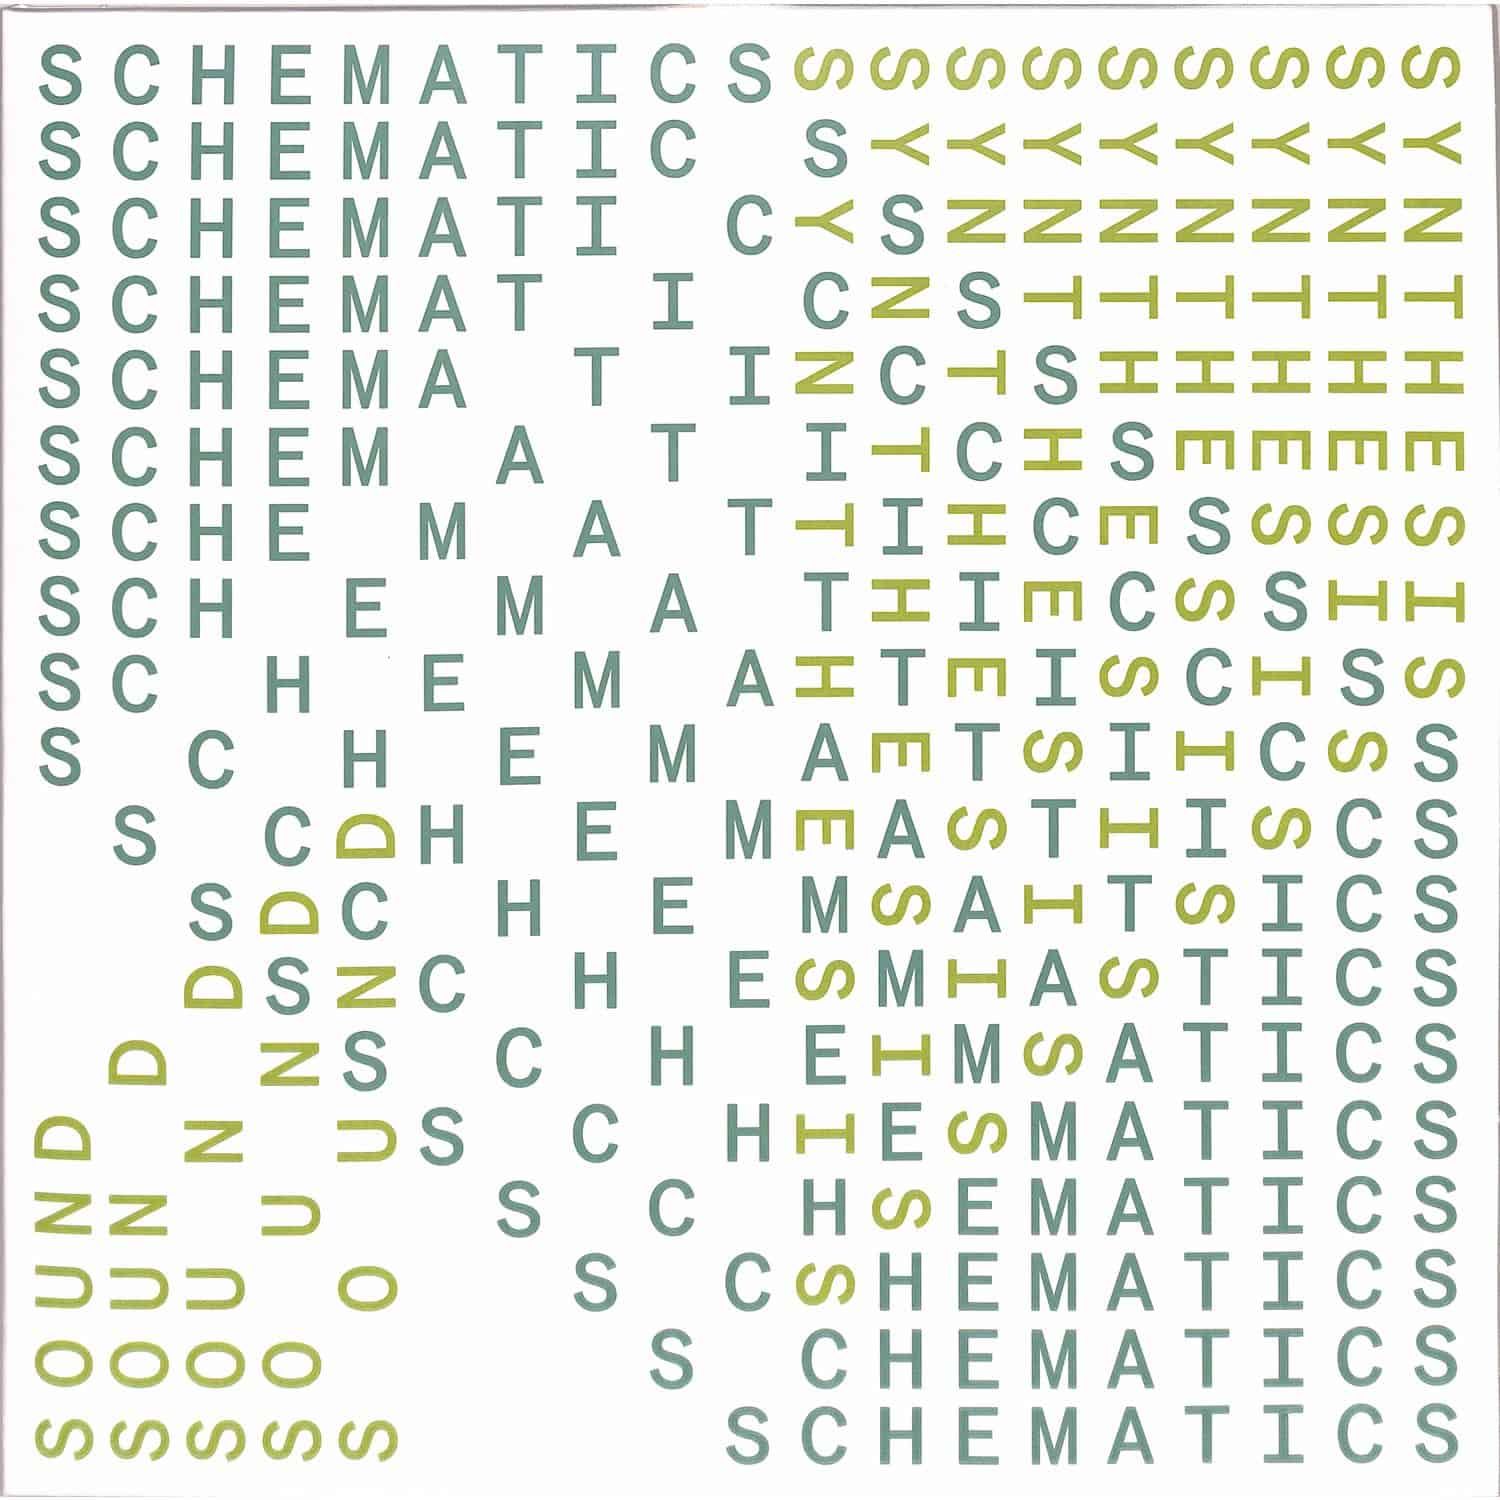 Sound Synthesis - SCHEMATICS 